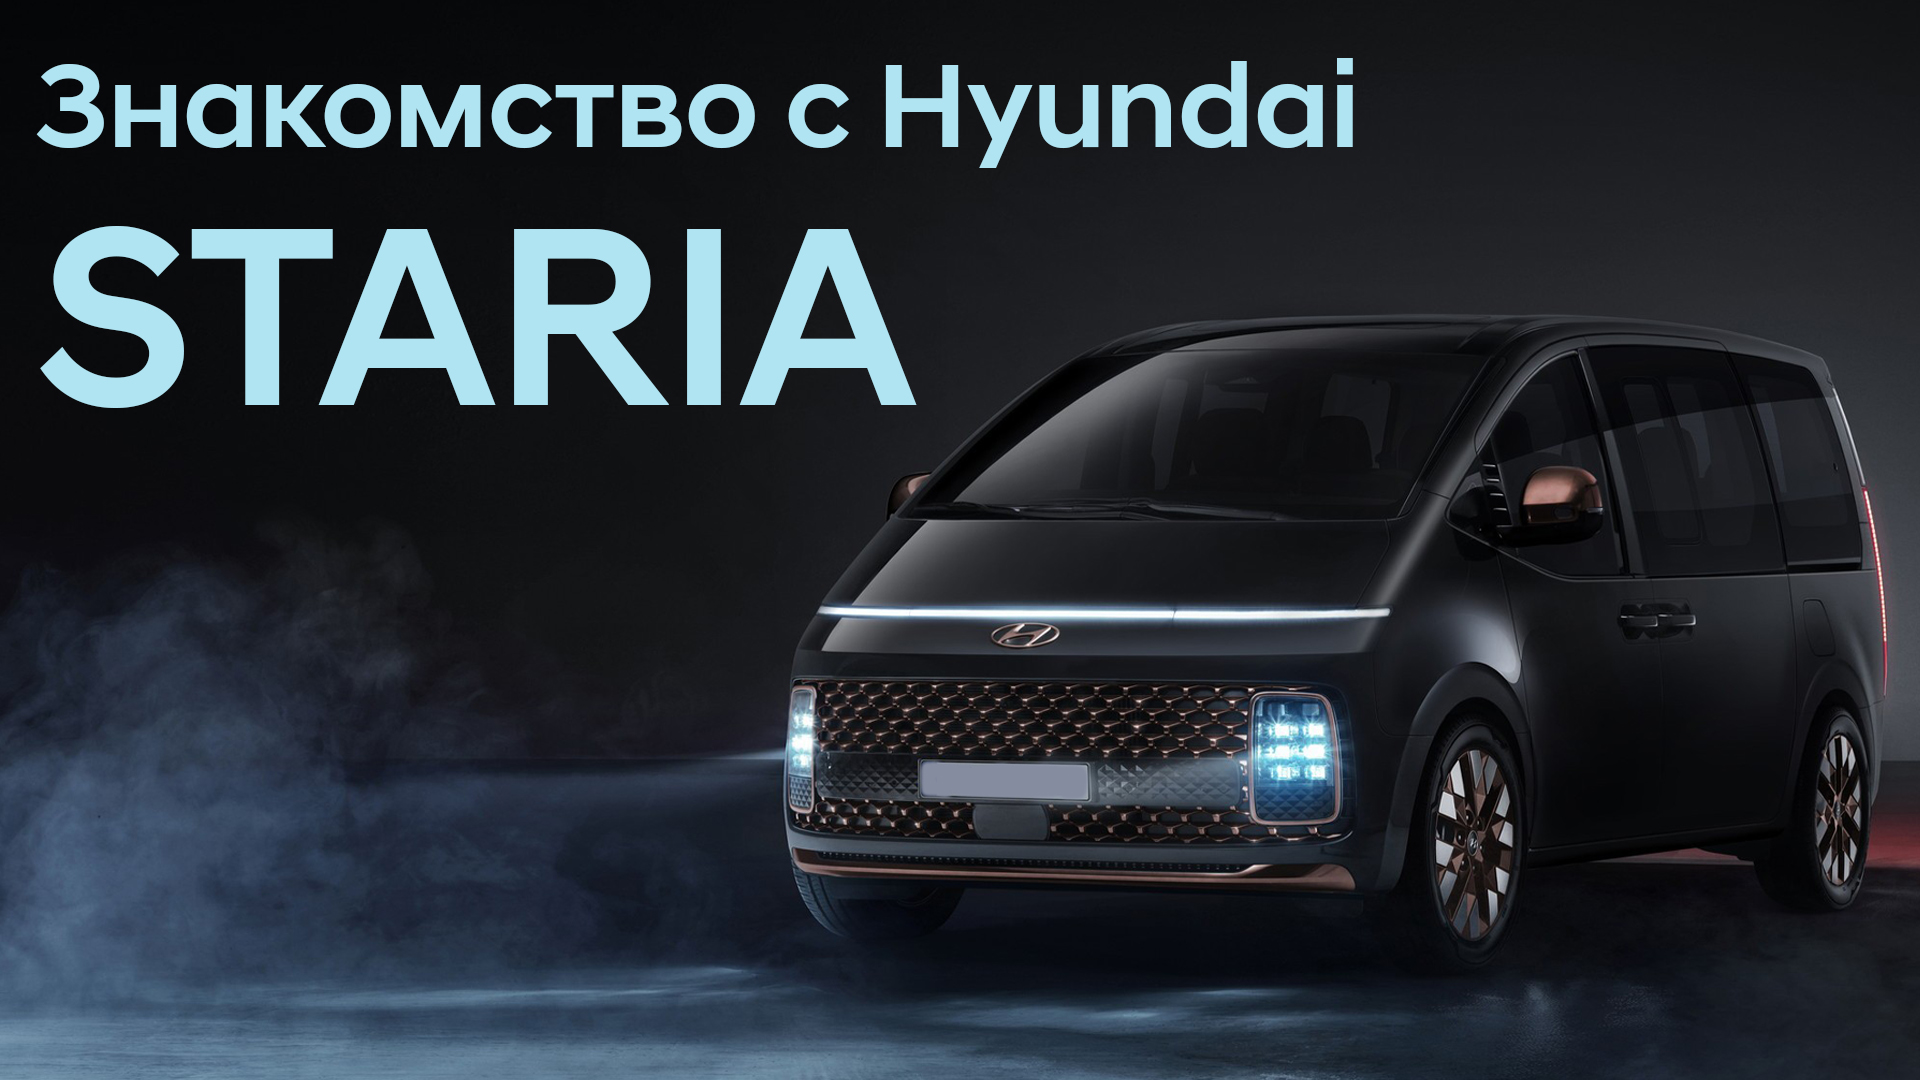 Это просто космос! Новая Hyundai Staria! Блогеры об этом не расскажут.